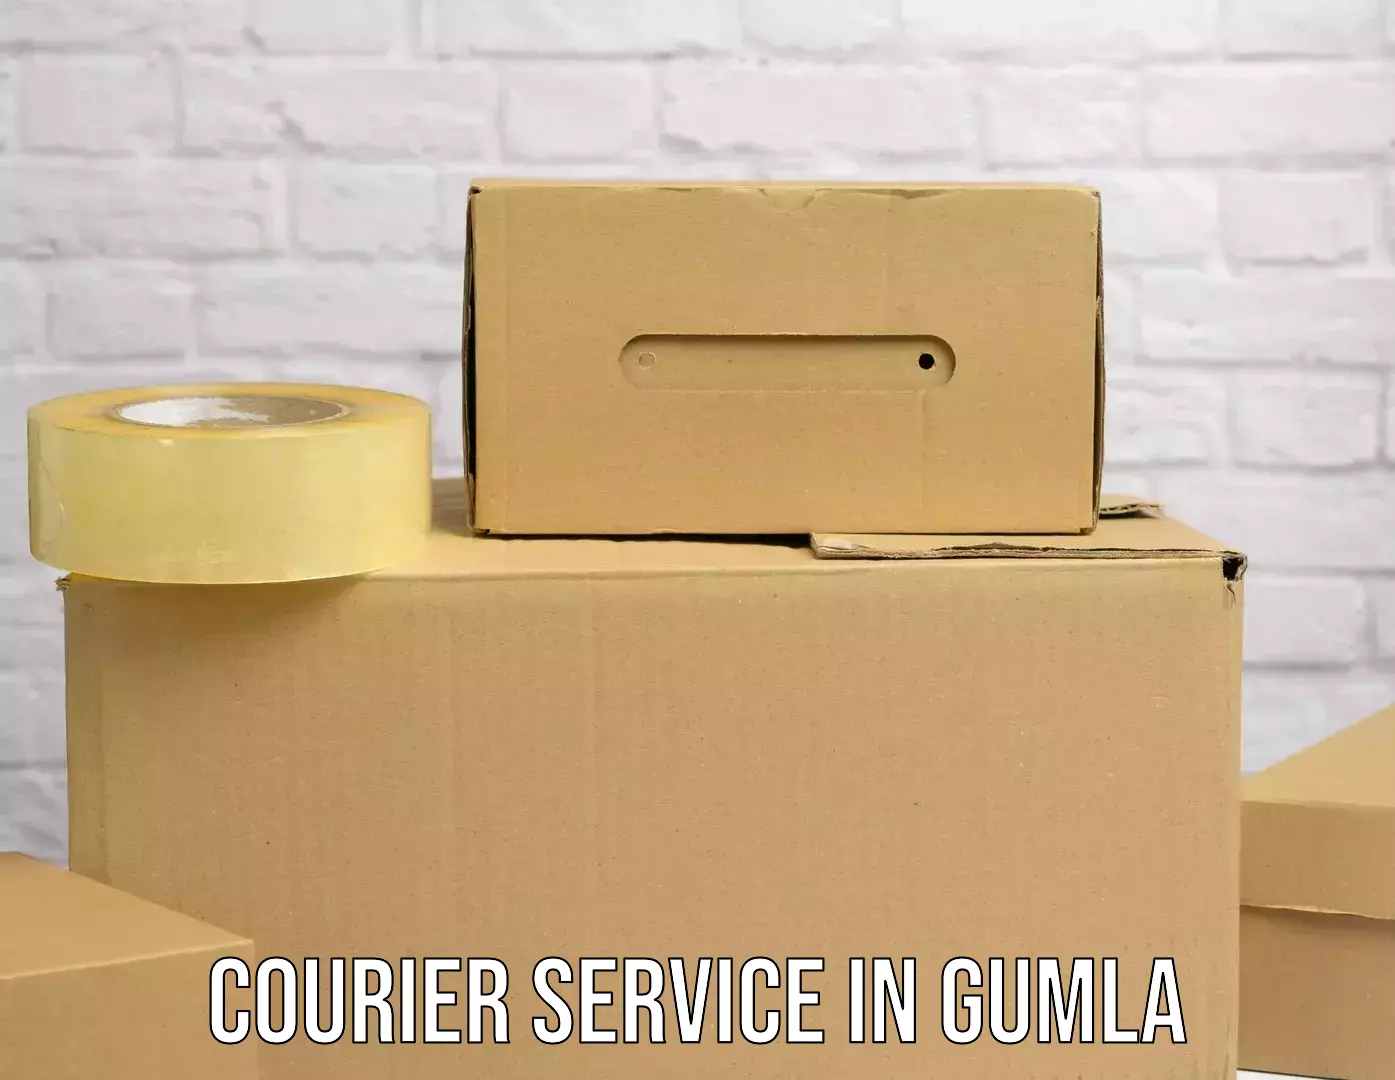 Advanced freight services in Gumla